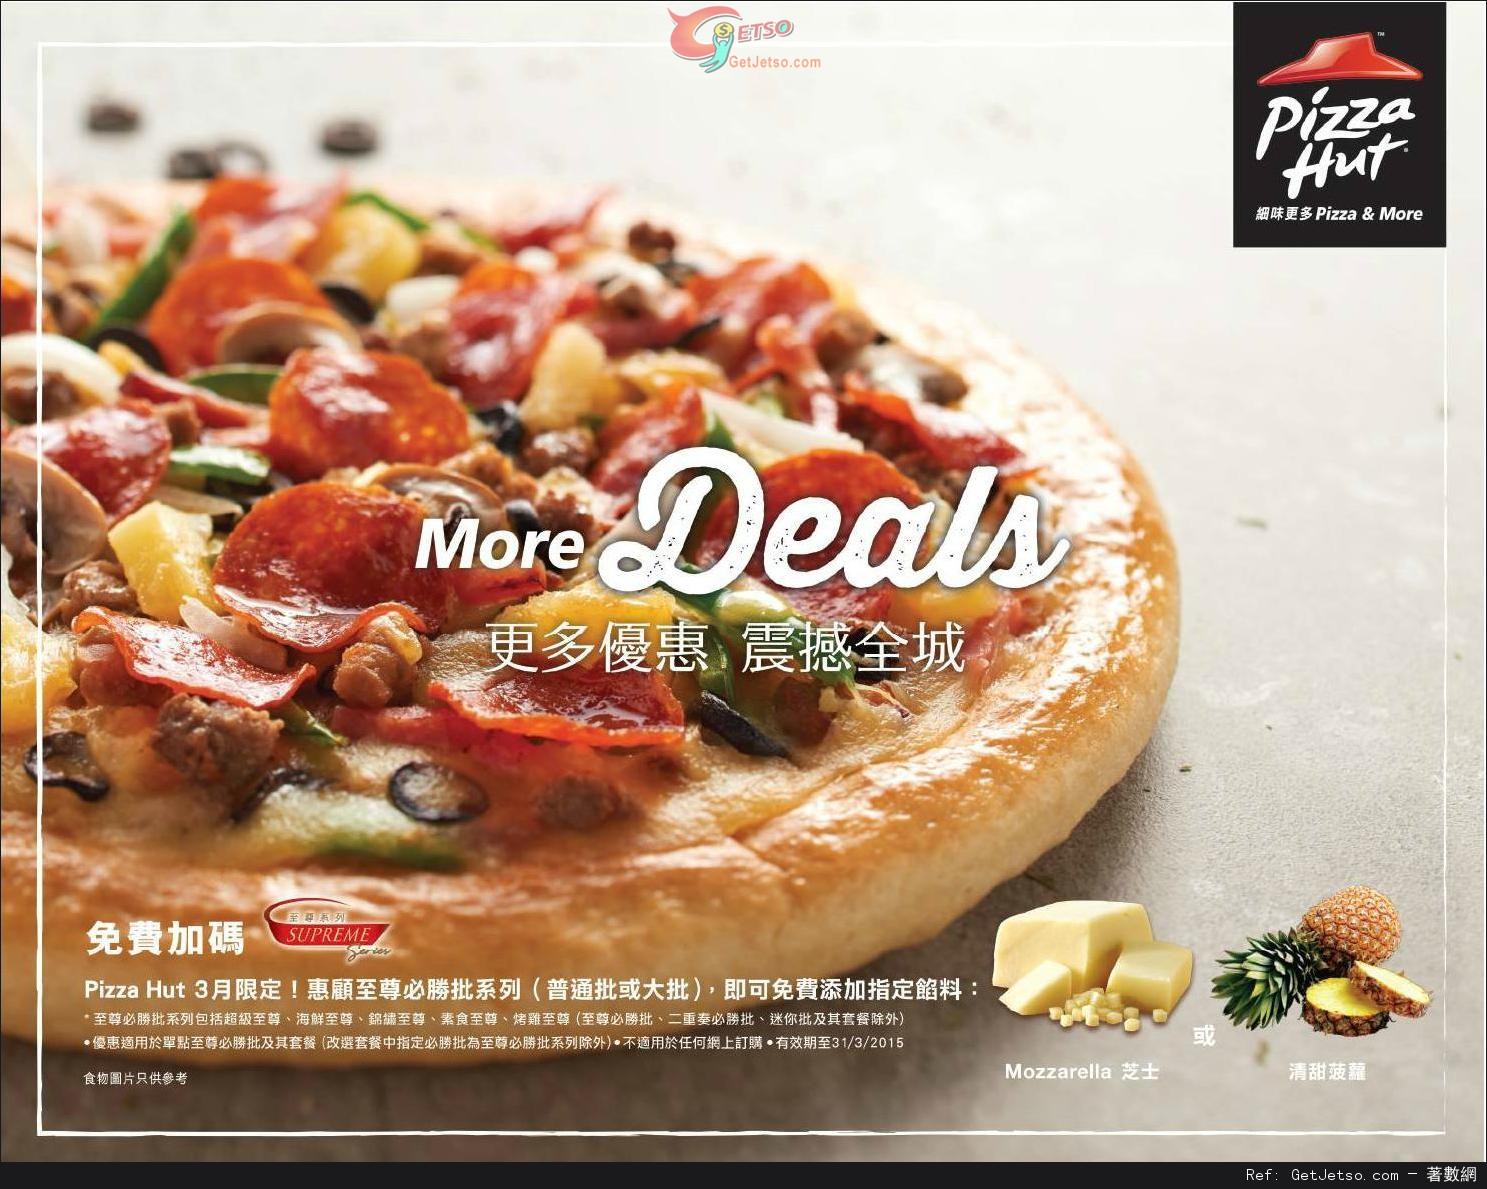 Pizza Hut 惠顧任何至尊必勝批系列免費添加指定餡料優惠(至15年3月31日)圖片1